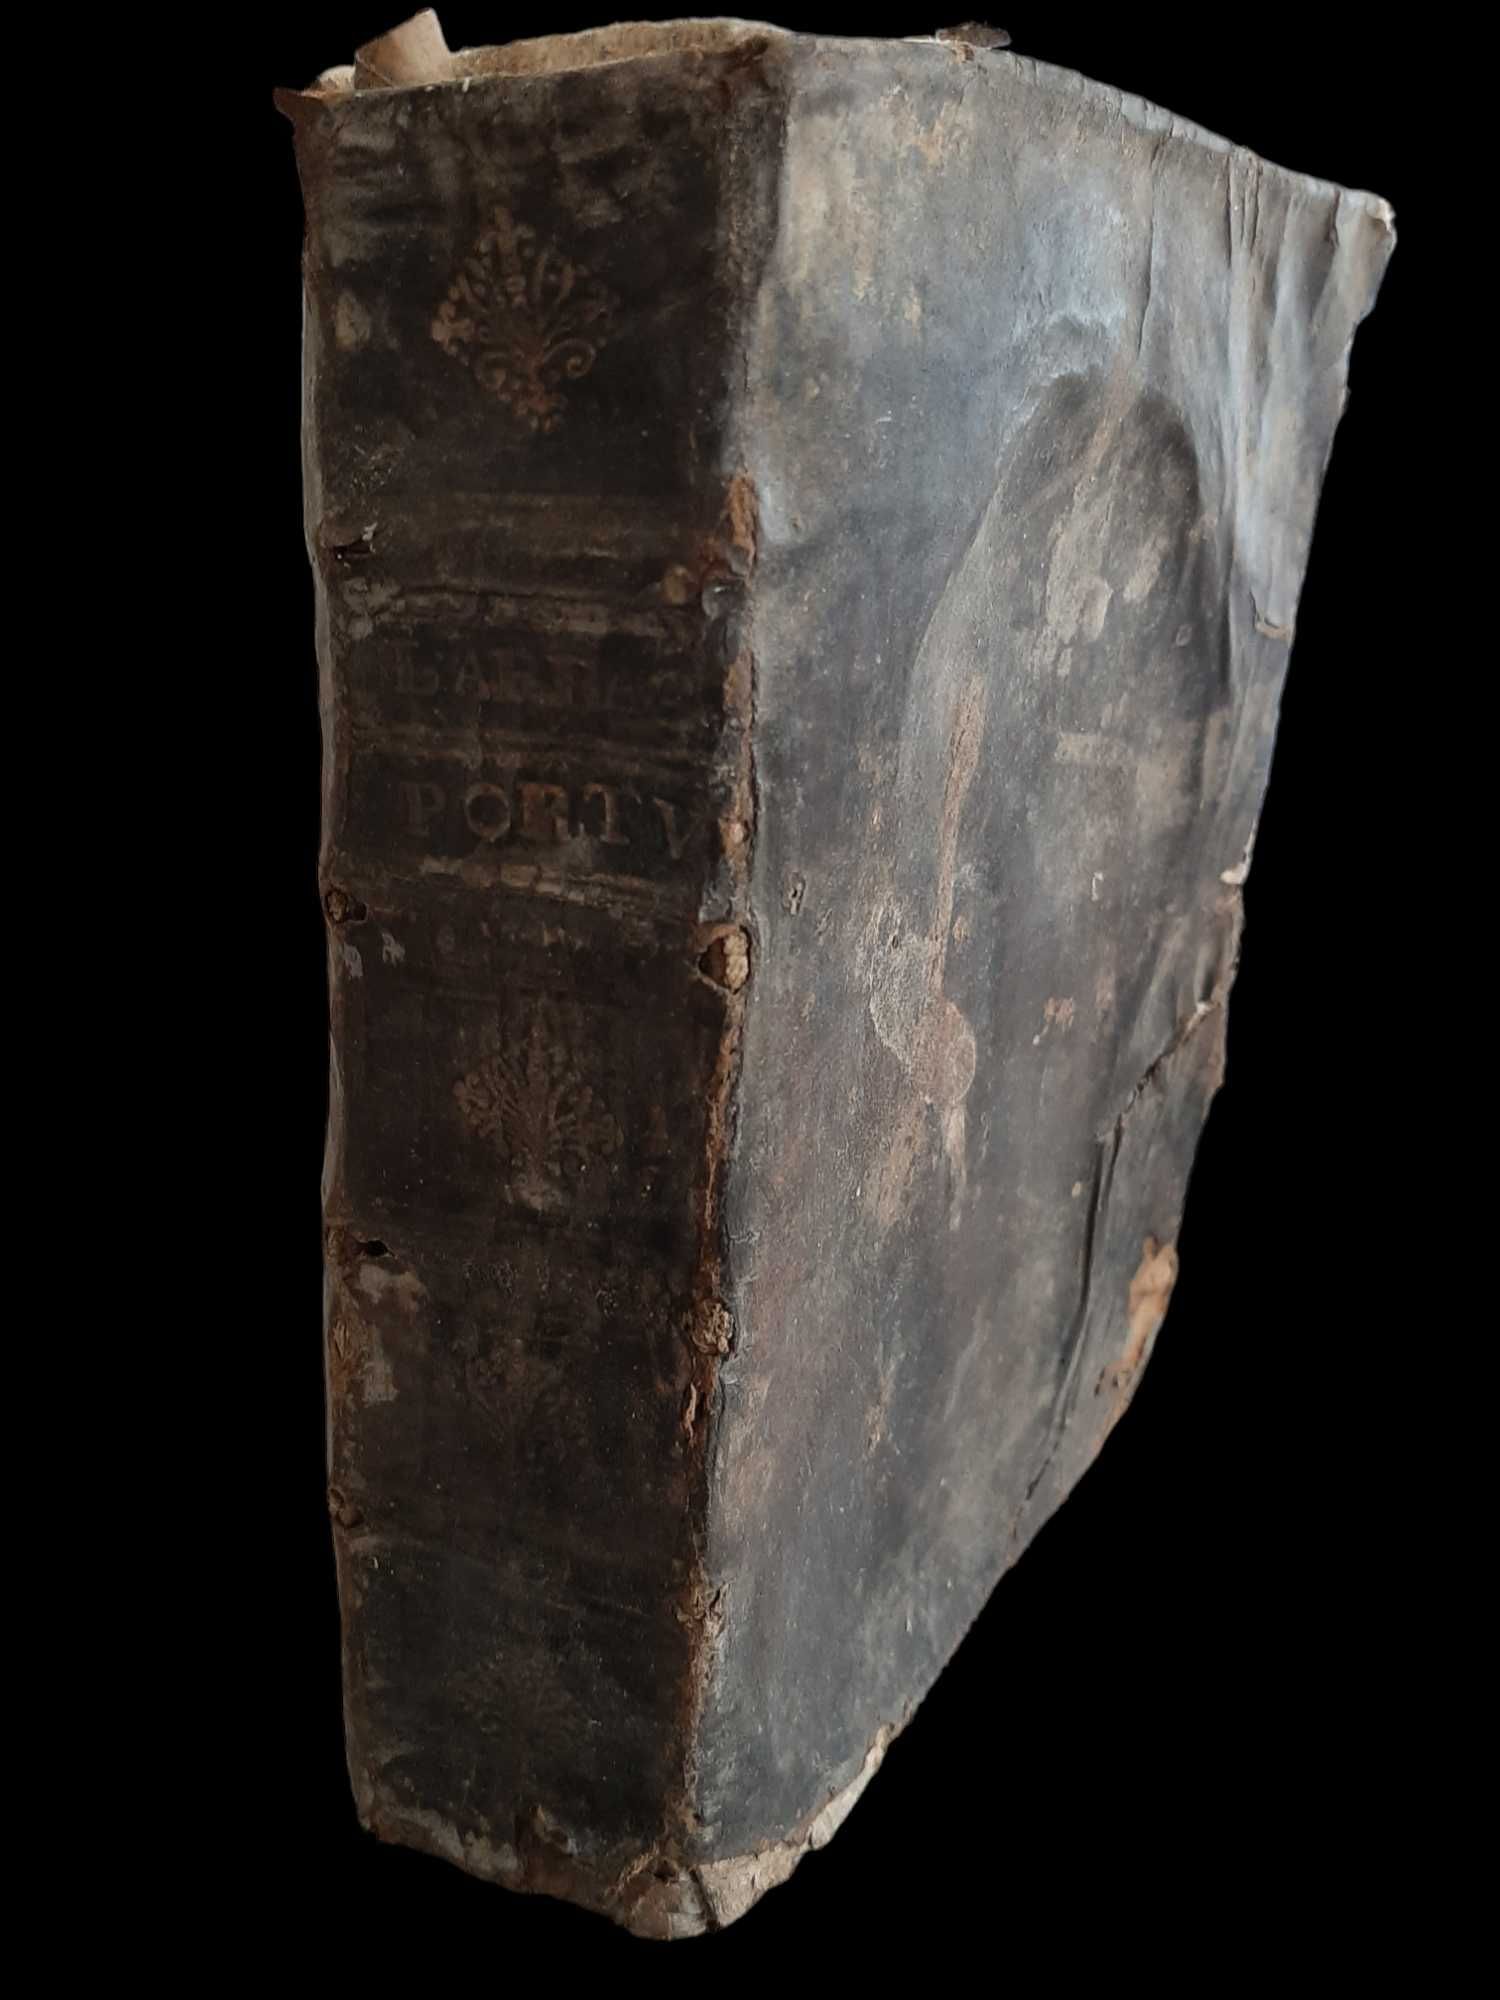 Livro - Promptuario da Theologia Moral - 1727